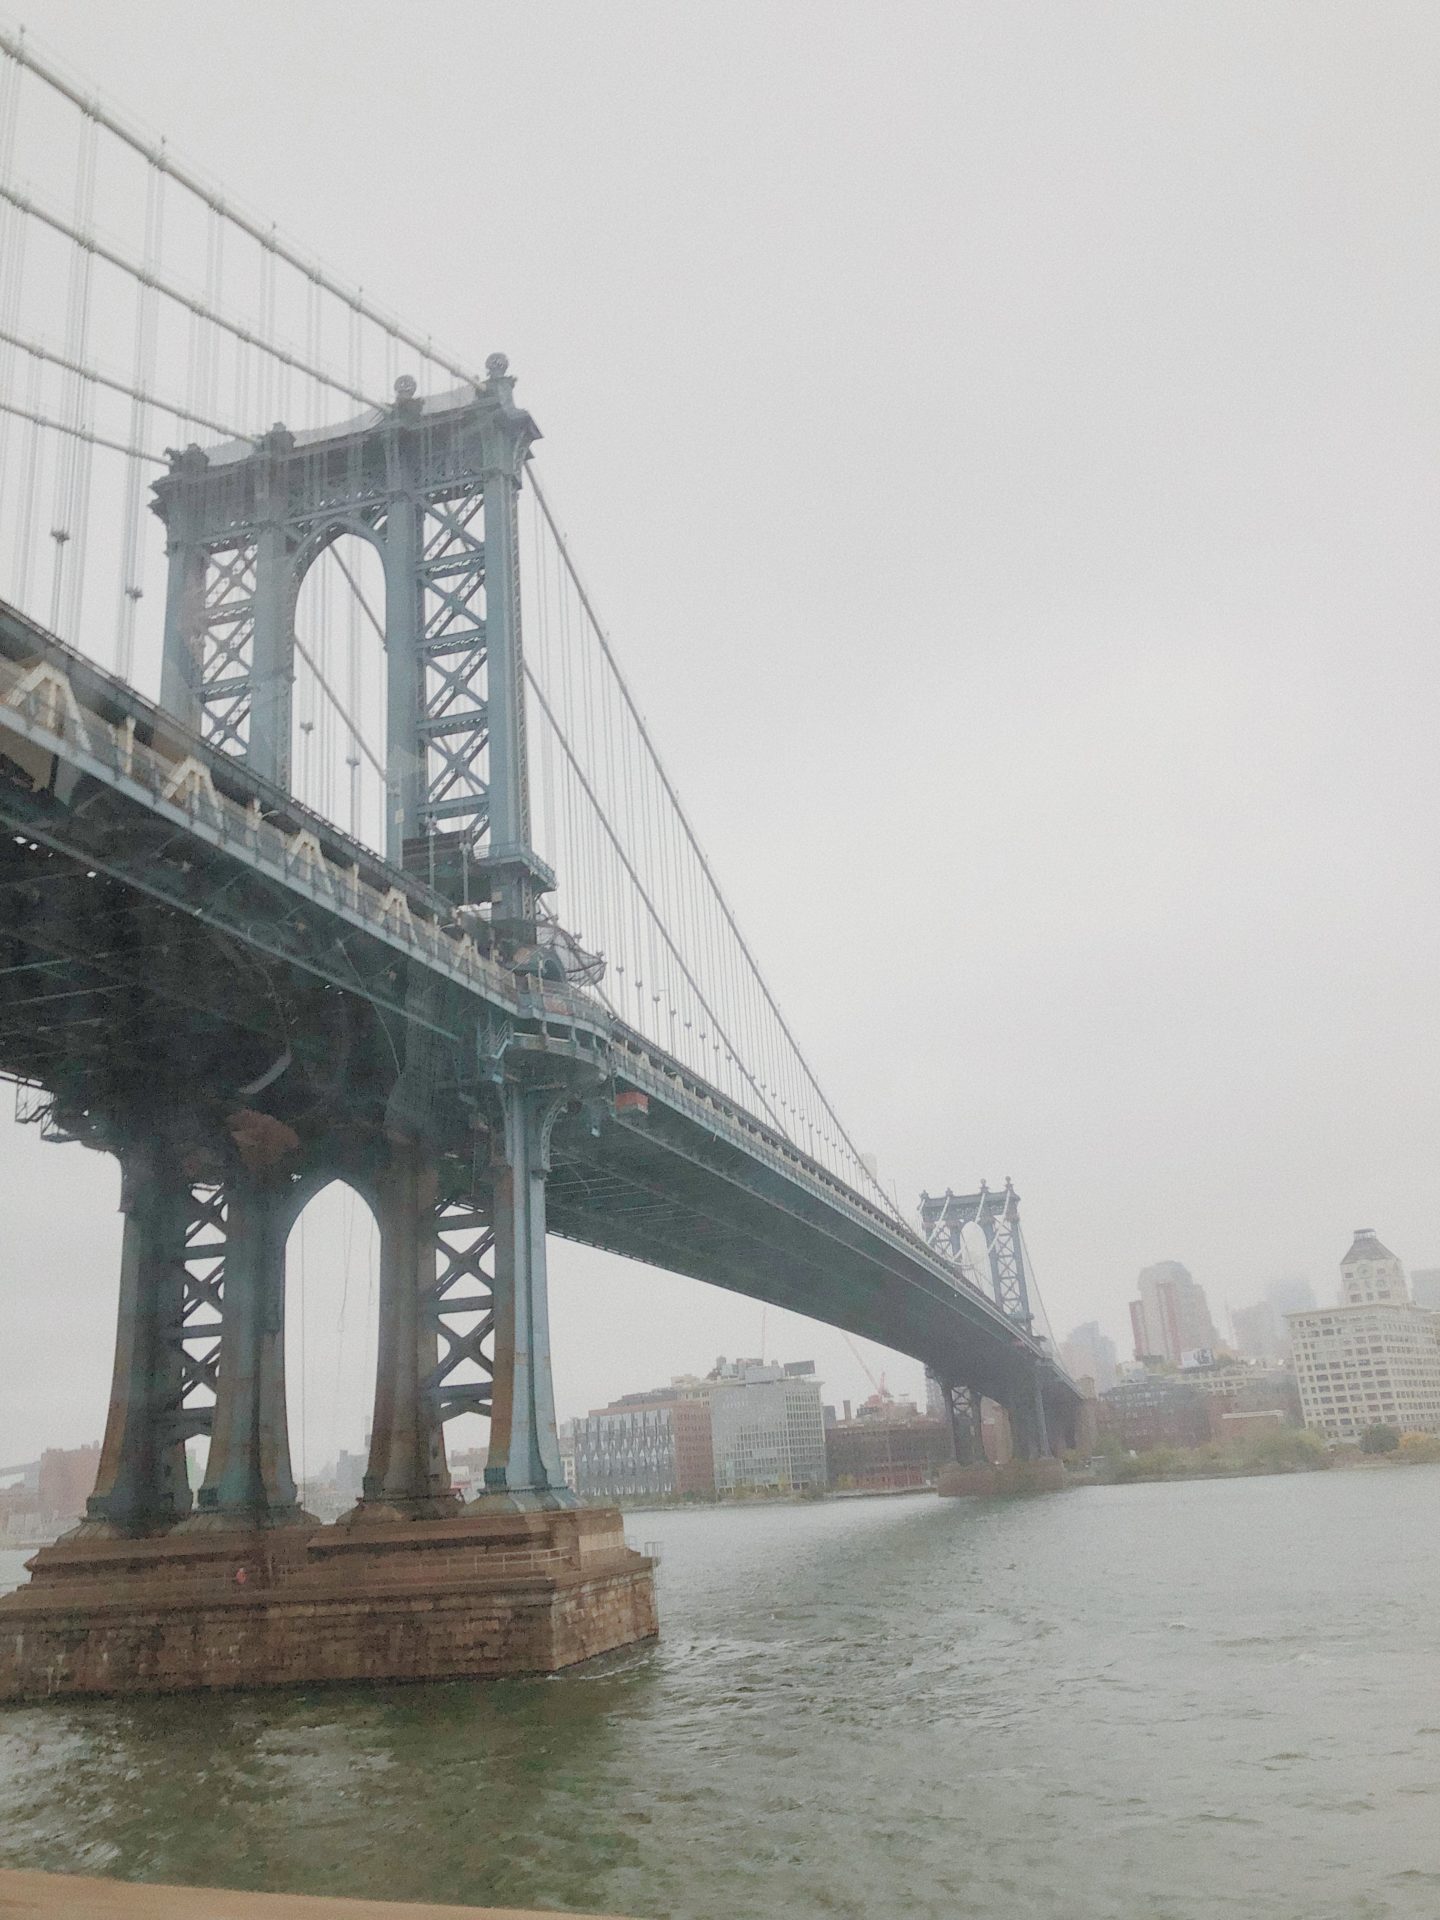 The New York City Bridge